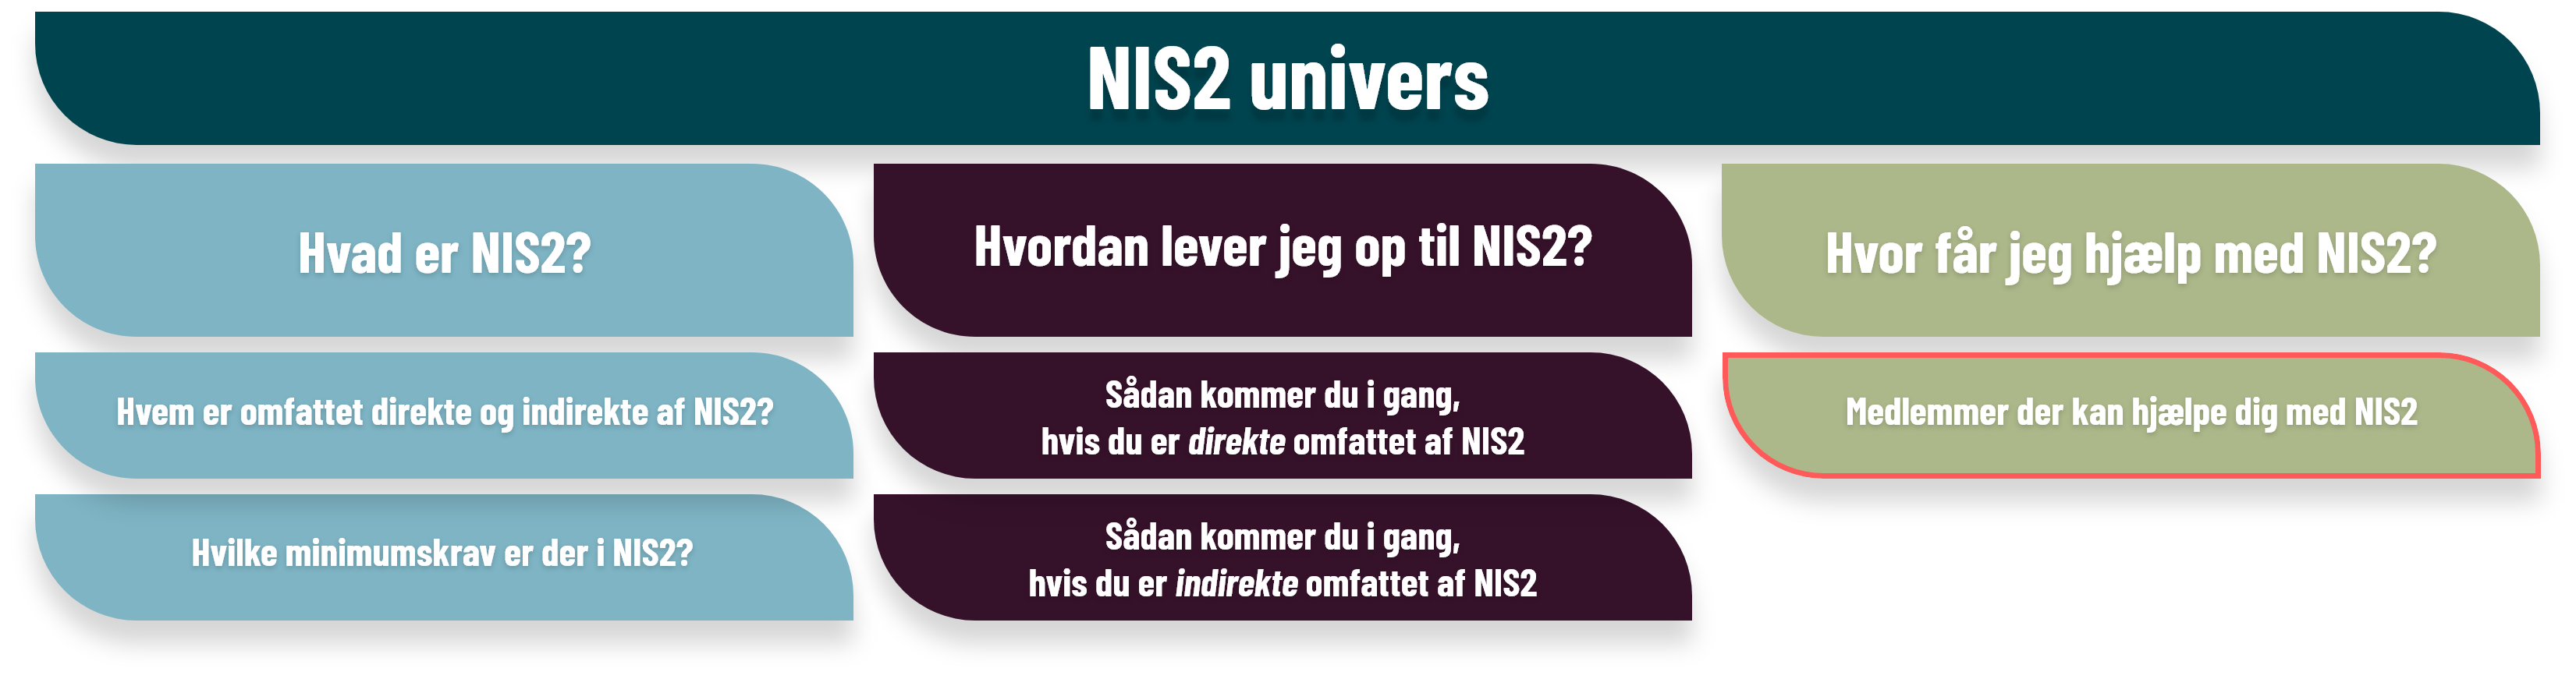 Medlemmer der kan hjælpe dig med NIS2